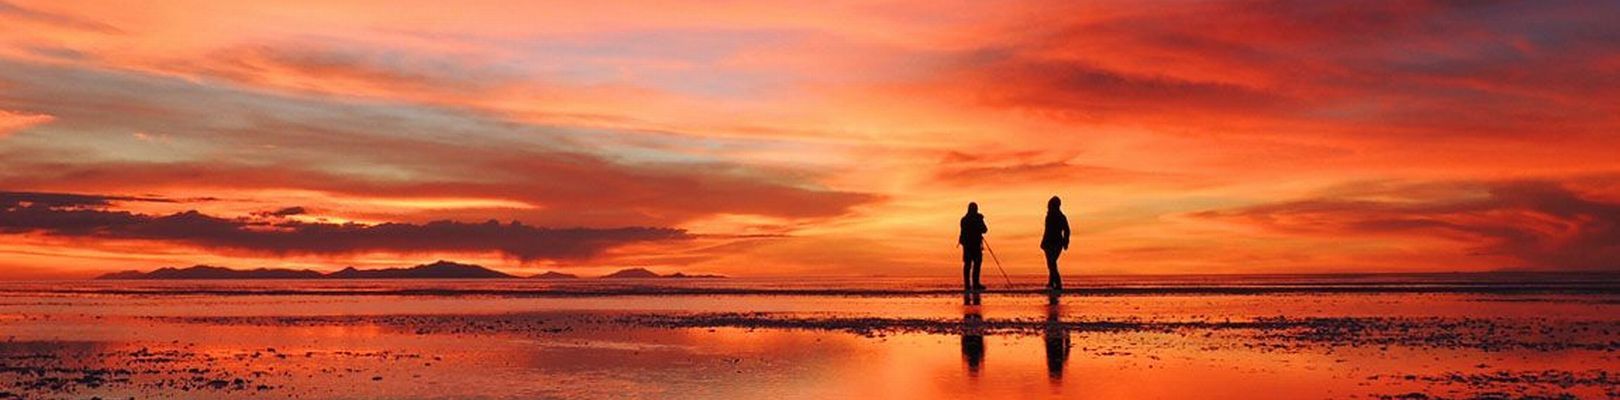 Salar-de-Uyuni-coucher-de-soleil